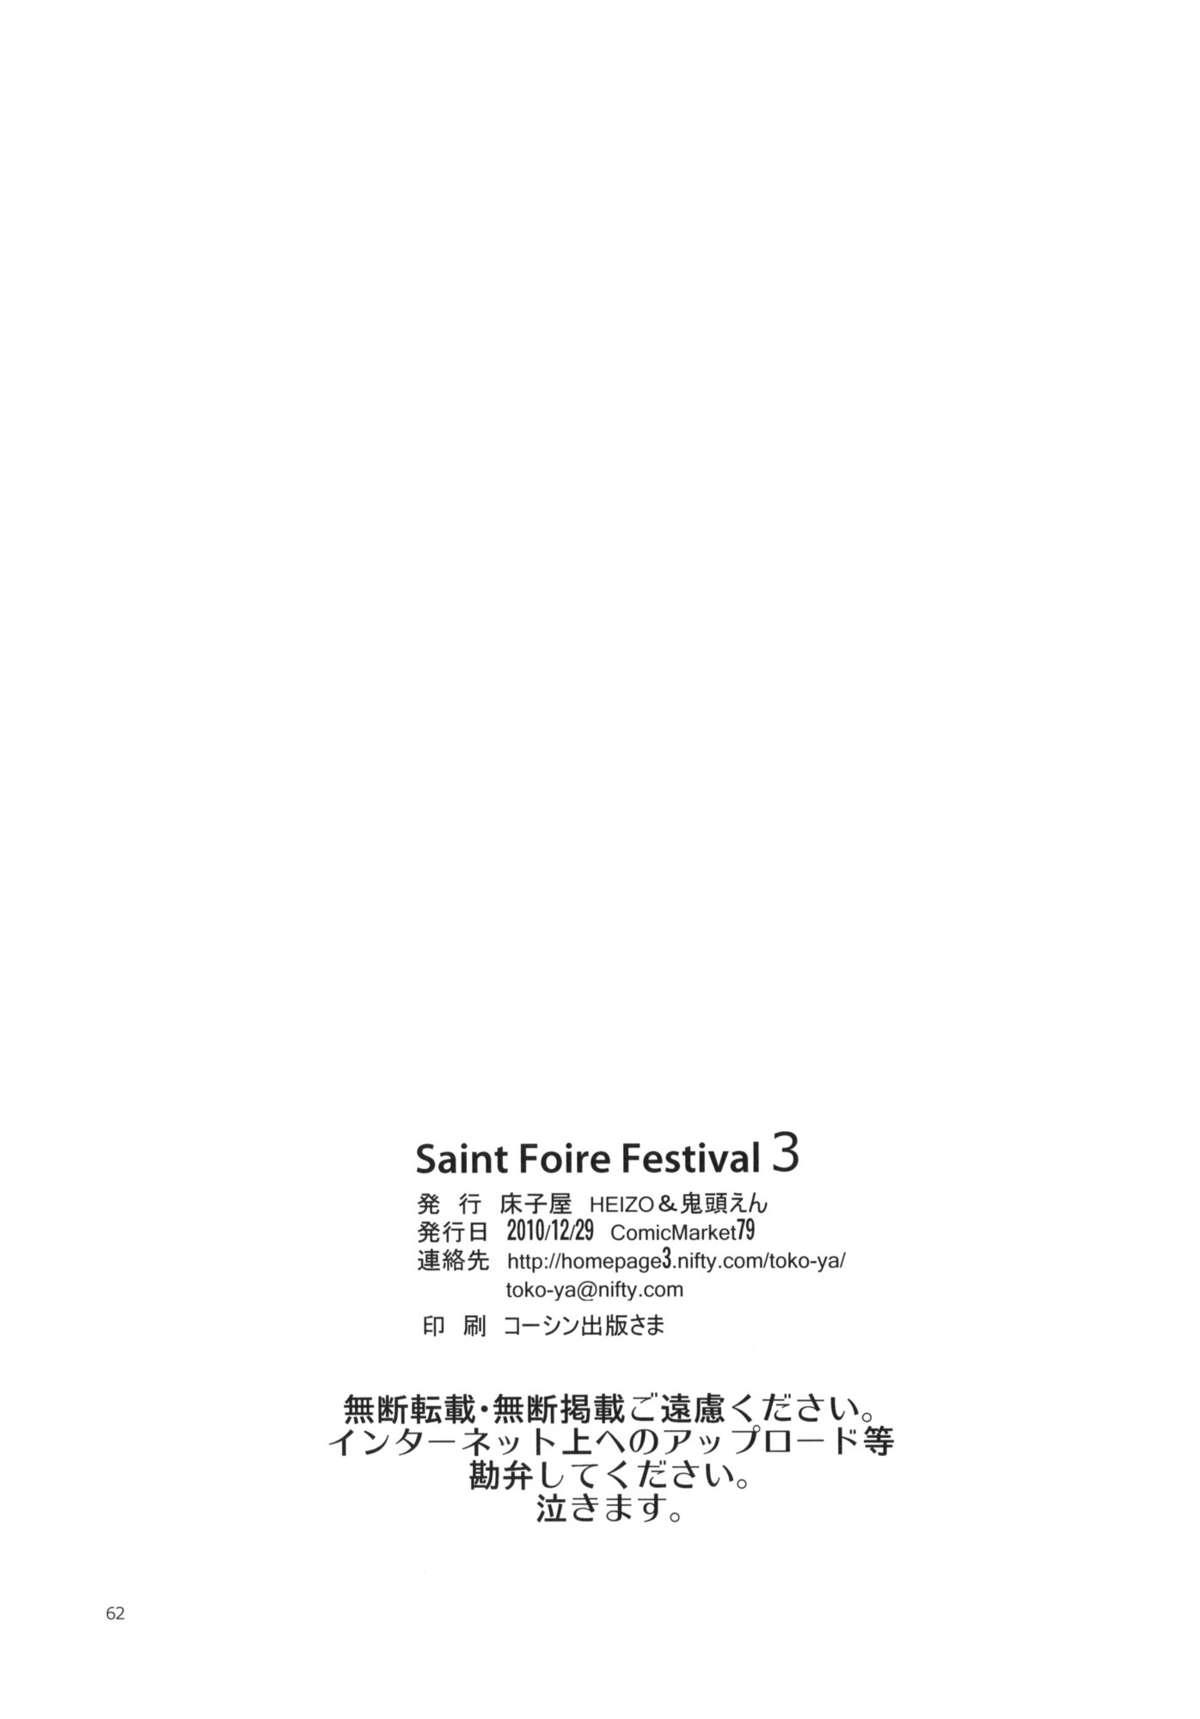 Saint Foire Festival 3 60